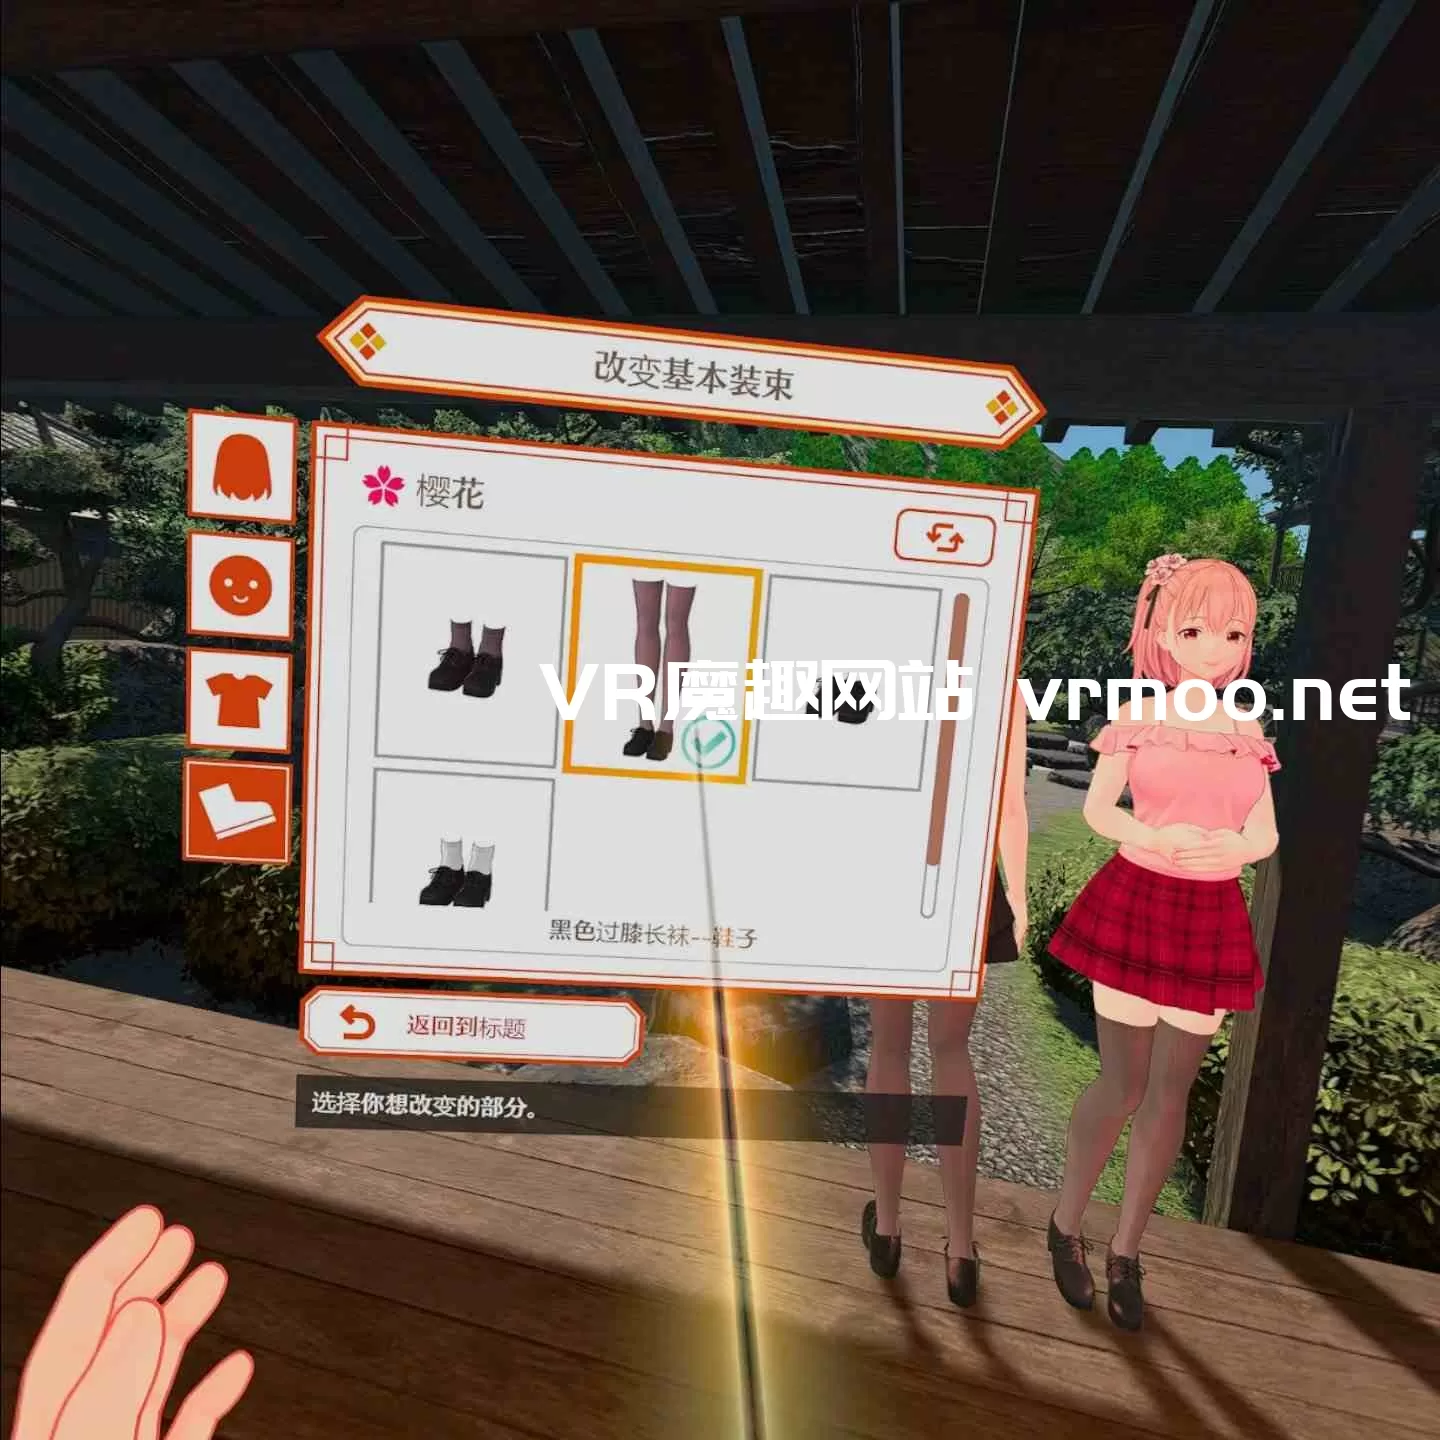 温泉物语汉化中文版（KoiKoiMonogatari VR）恋来い温泉物語VR